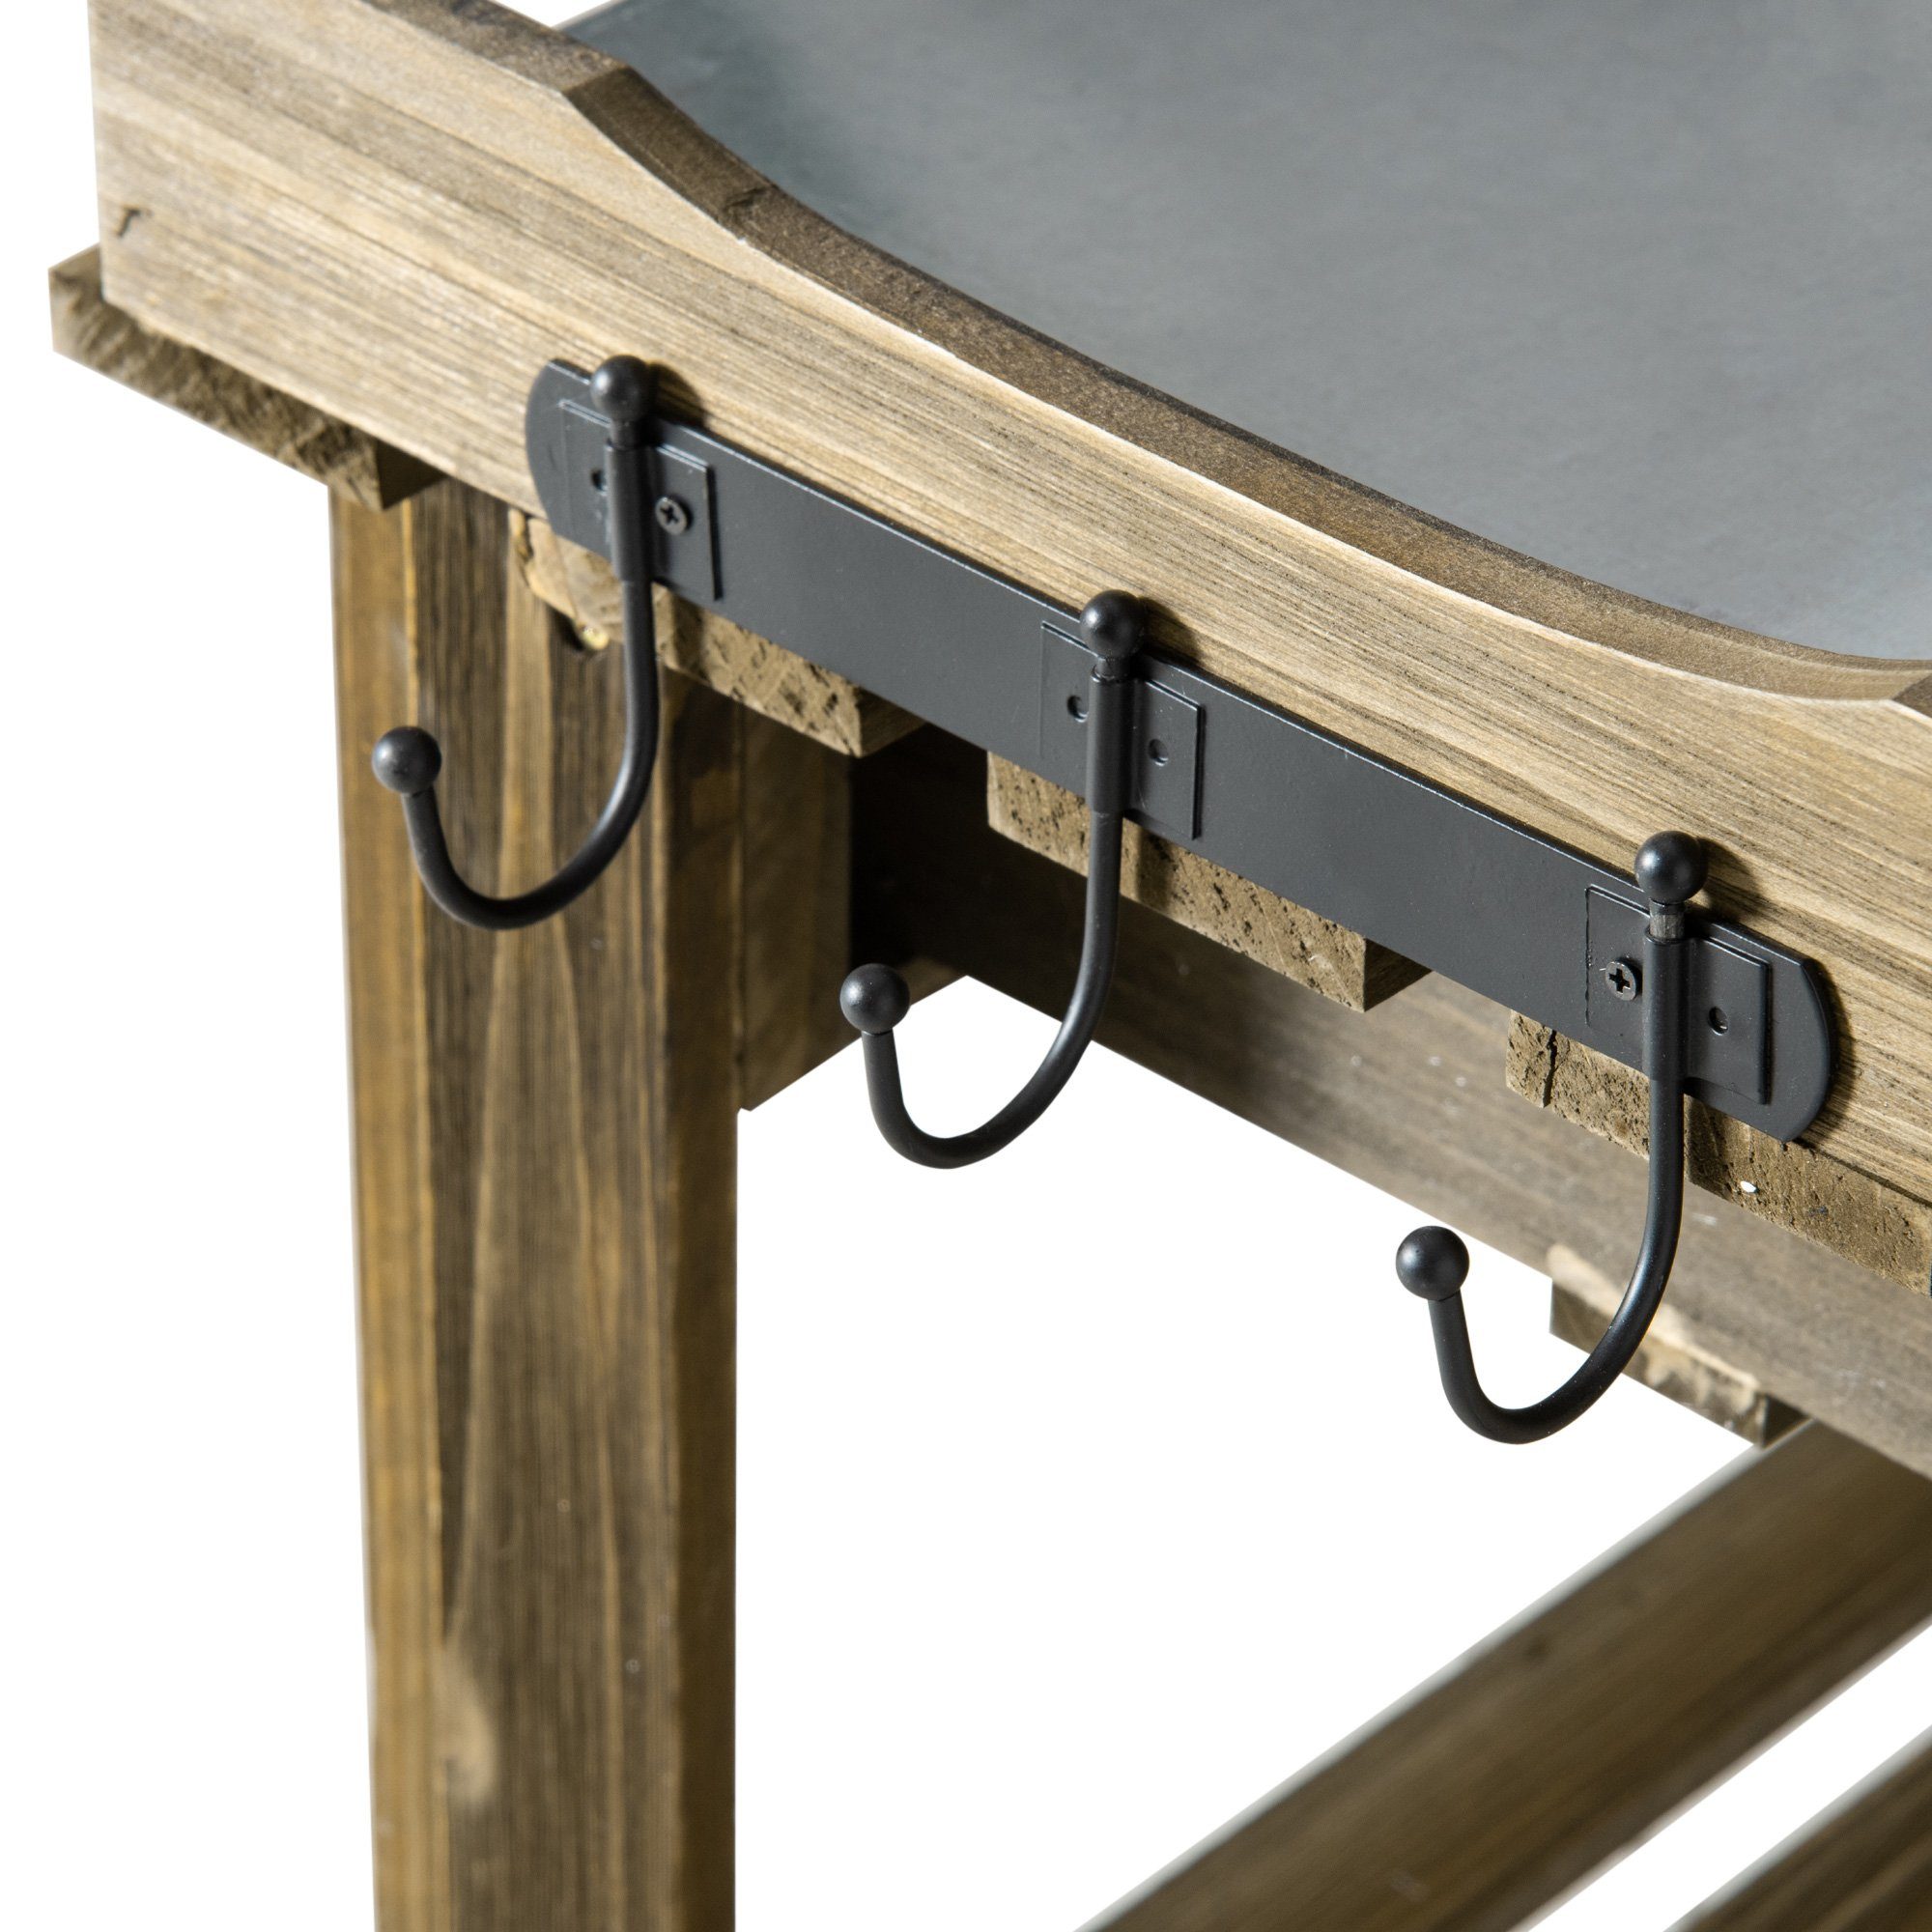 Tischplatte (Set, 1-St., x 1 Pflanztisch Outsunny Metall aus Pflanztisch), Pflanztisch